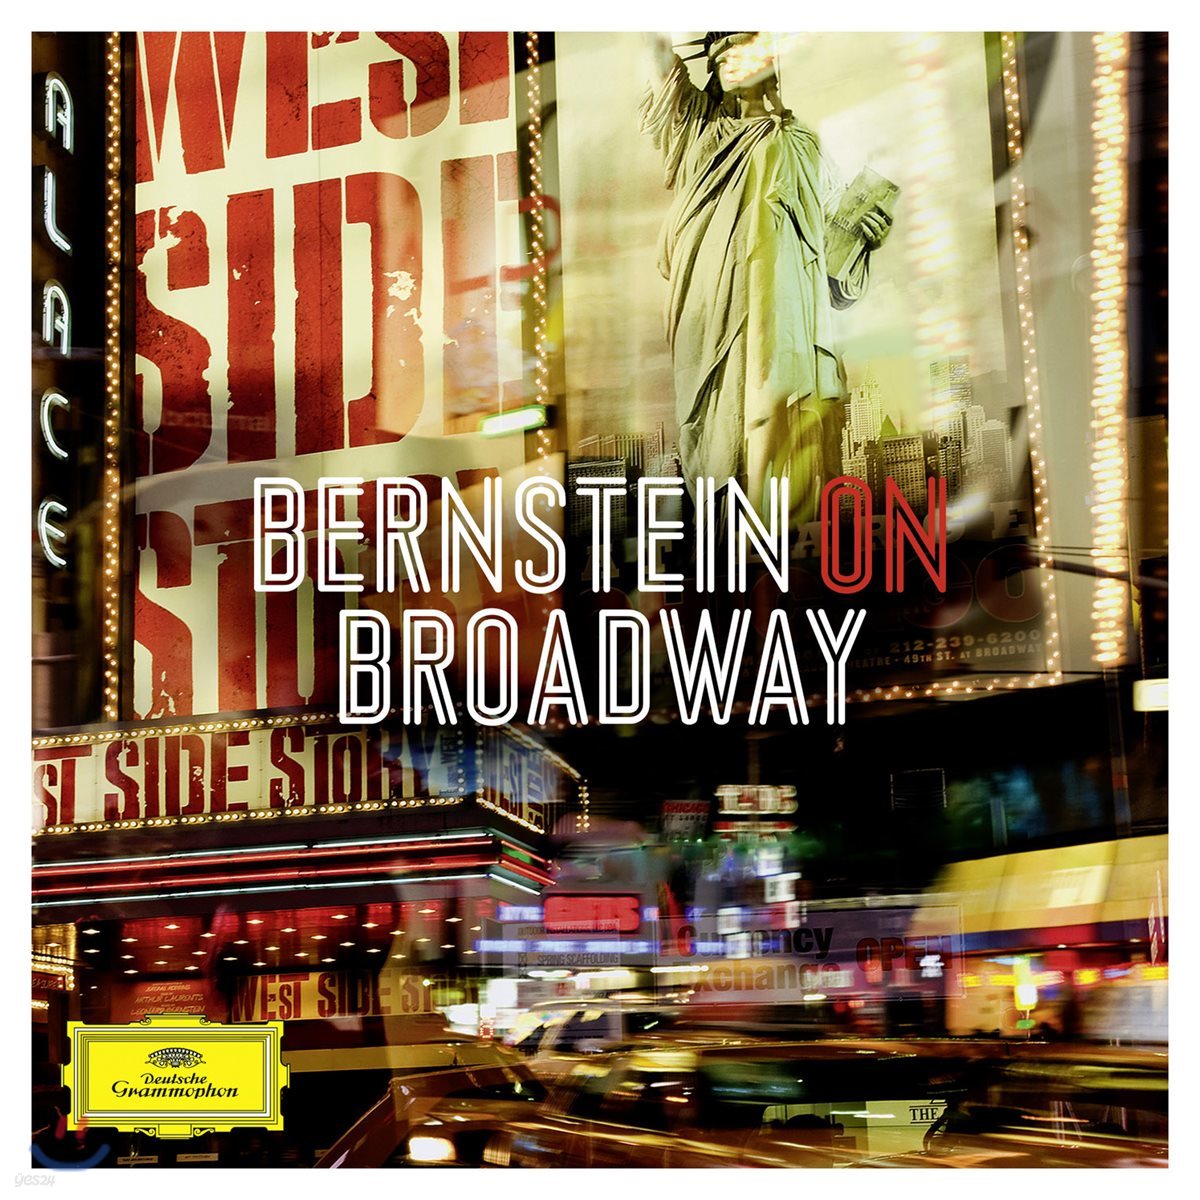 레너드 번스타인: 뮤지컬 하이라이트 모음집 - 웨스트사이드 스토리, 온 더 타운, 캔디드 (Leonard Bernstein On Broadway)